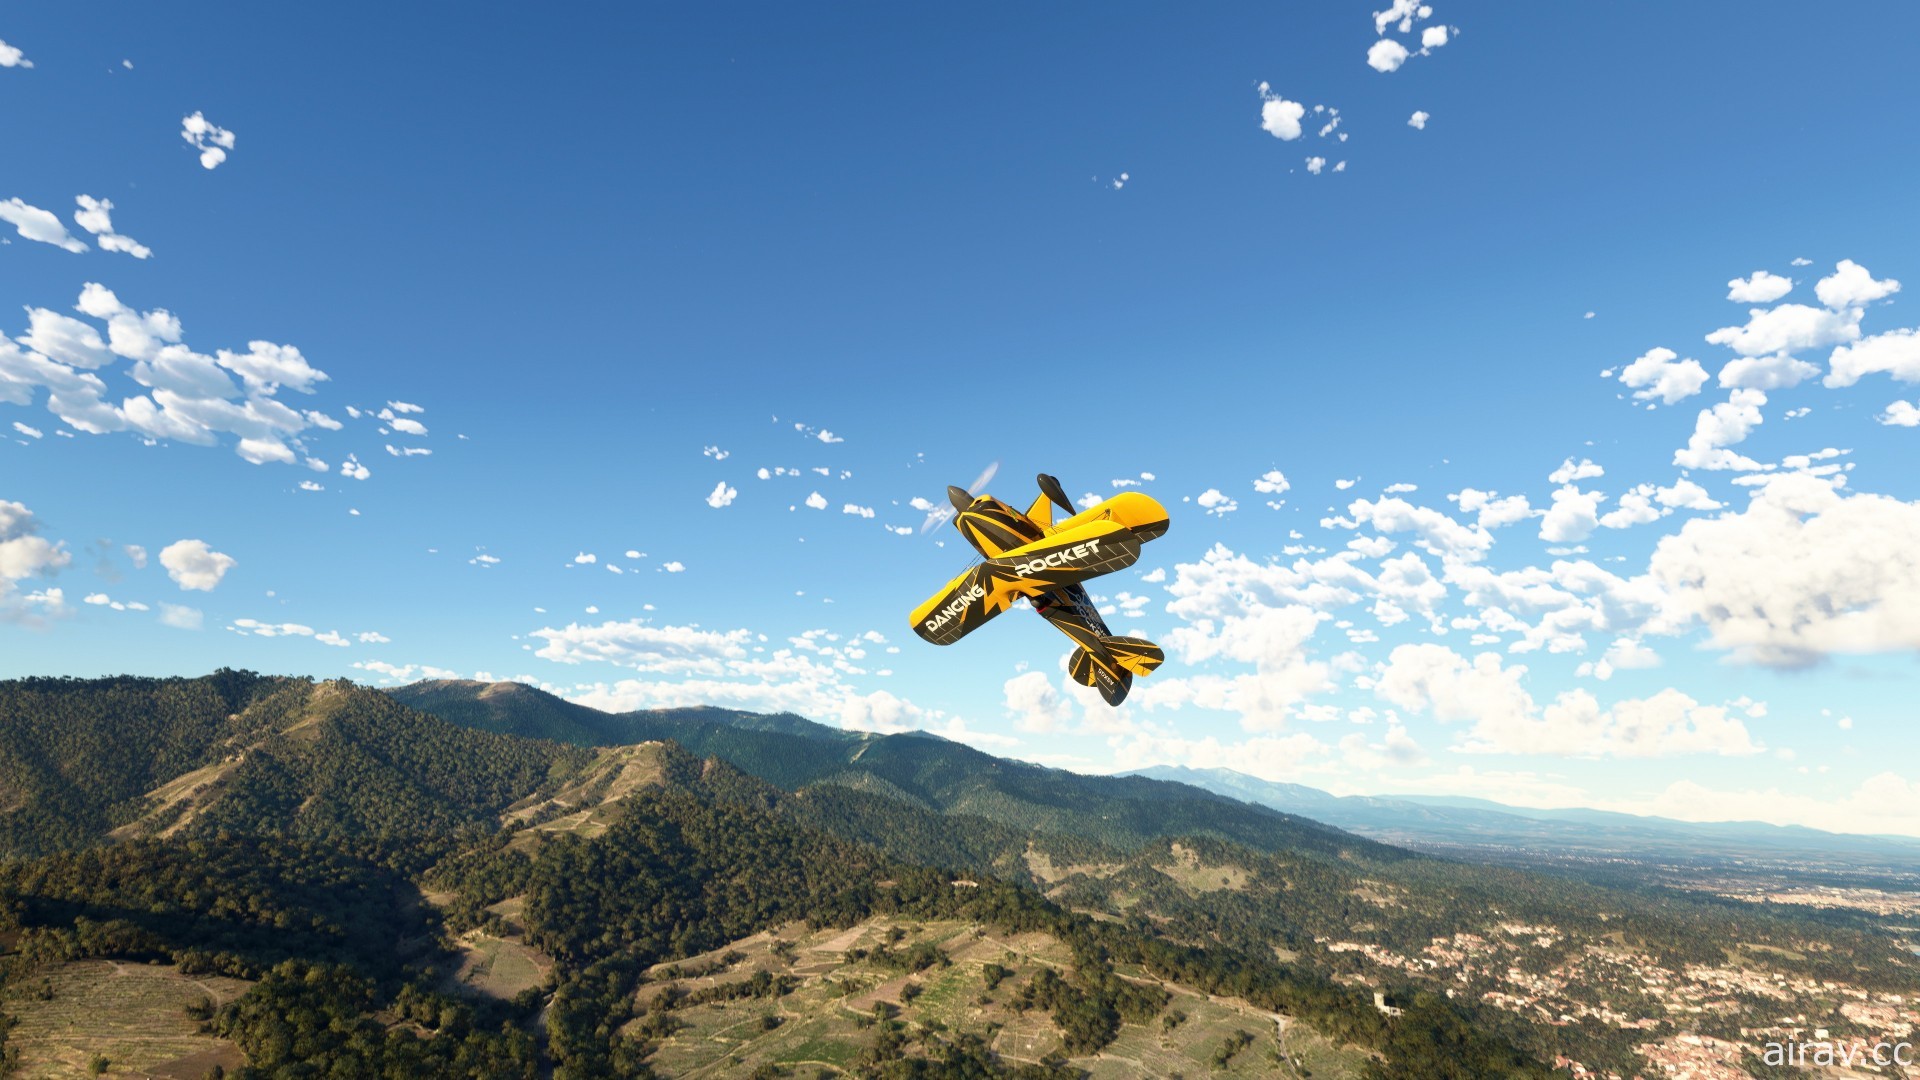 《微軟模擬飛行》年度遊戲版 11 月推出 收錄首款戰鬥機 F/A-18 超級大黃蜂